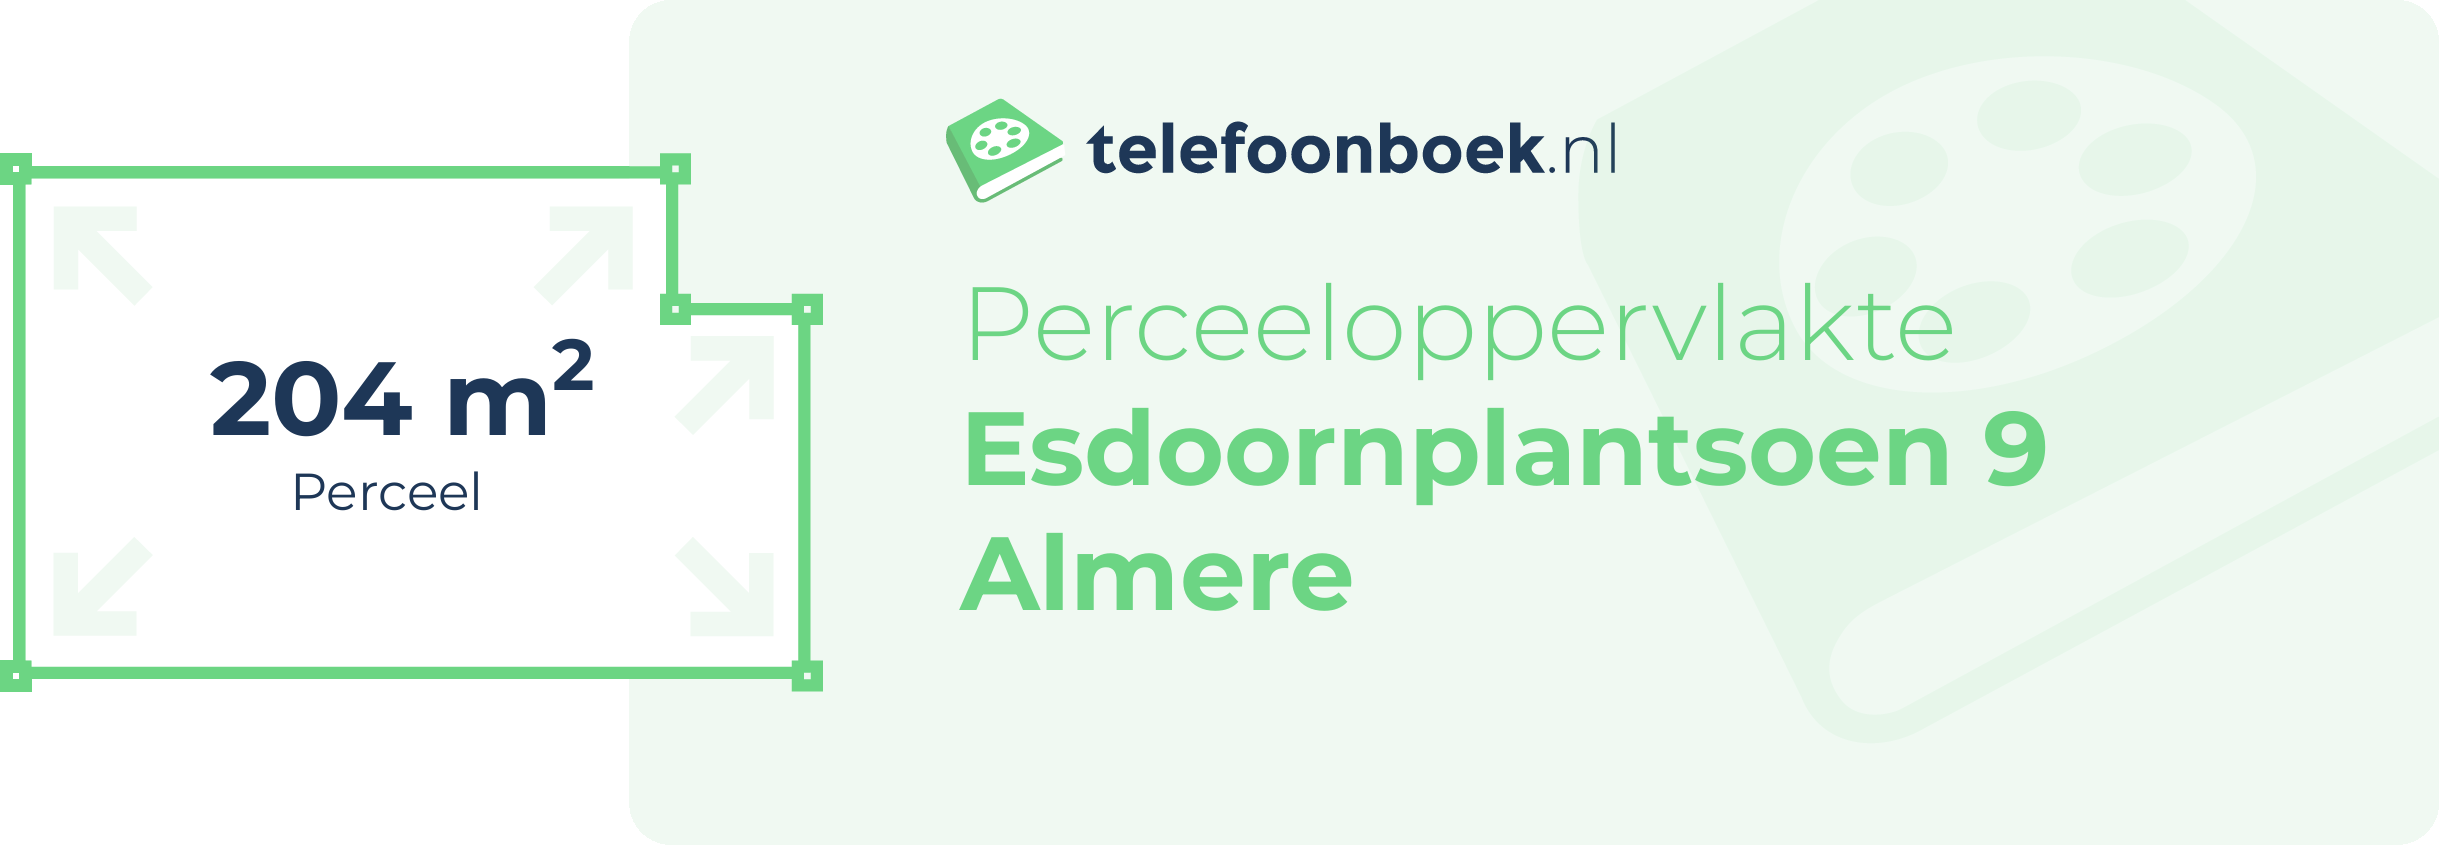 Perceeloppervlakte Esdoornplantsoen 9 Almere